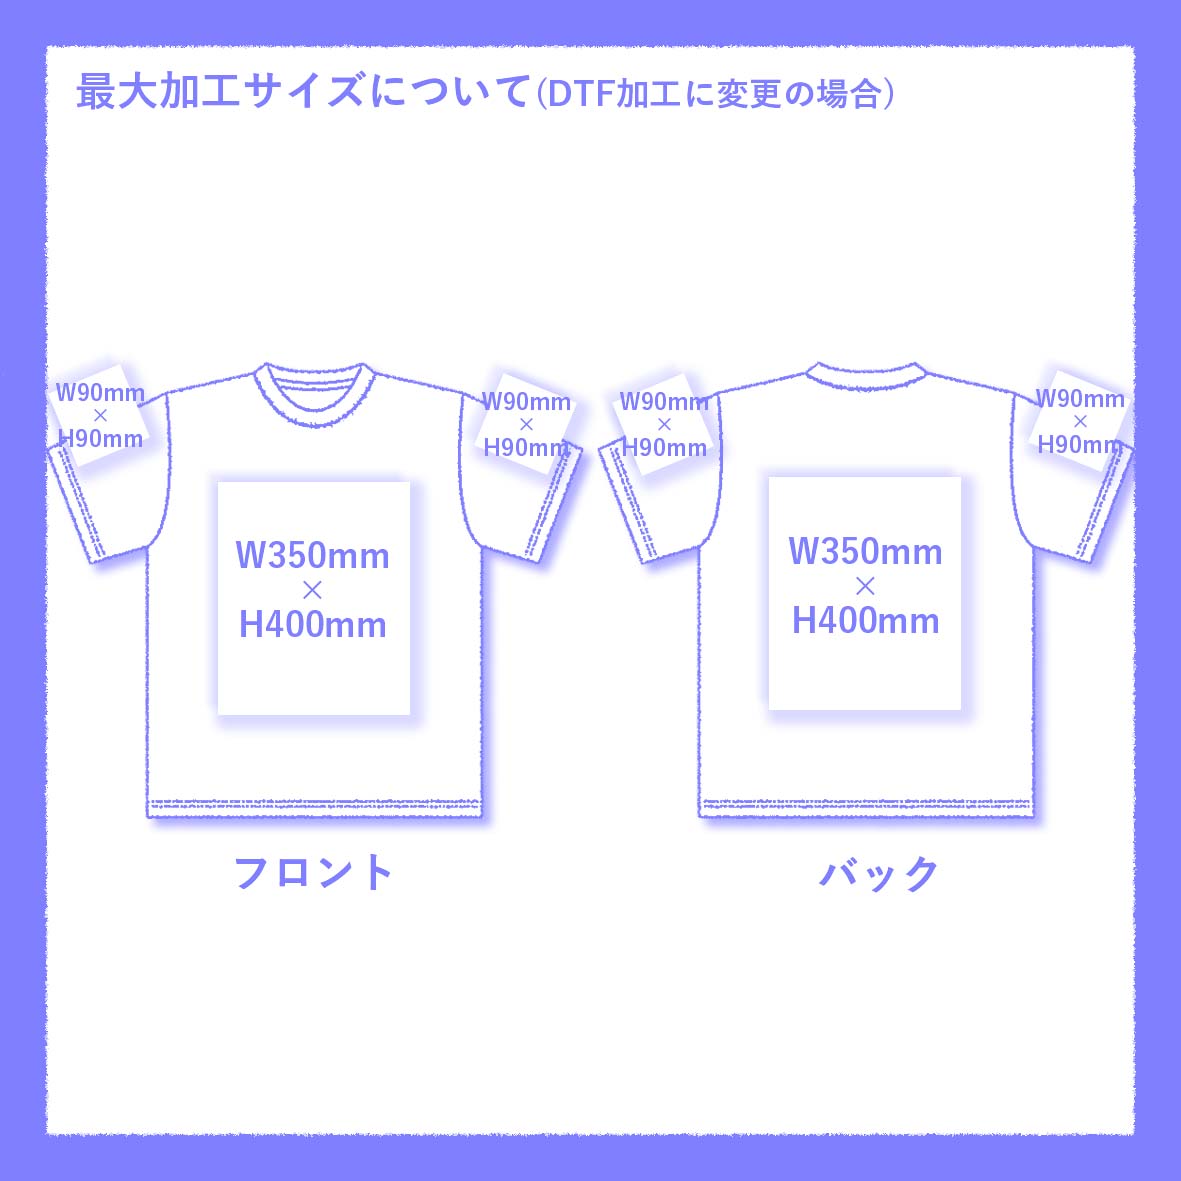 GILDAN ギルダン 4.5 oz ジャパンフィット ソフトスタイル リングスパンTシャツ (品番63000)